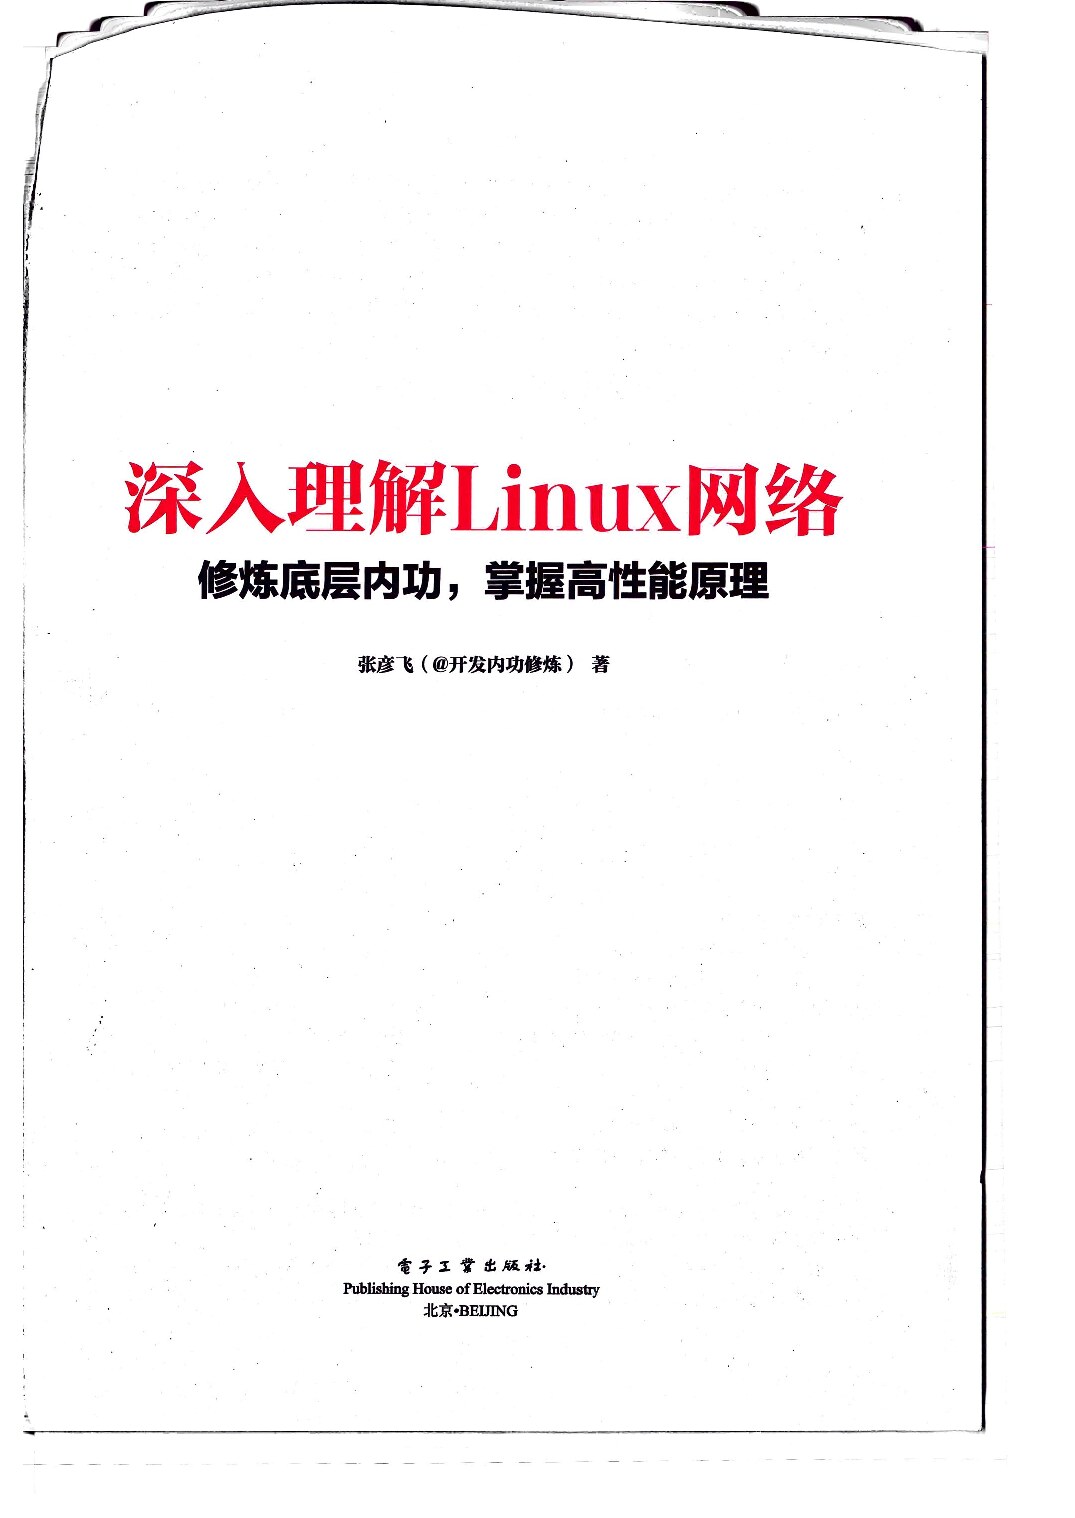 深入理解Linux网络： 修炼底层内功，掌握高性能原理 (张彦飞) (Z-Library)